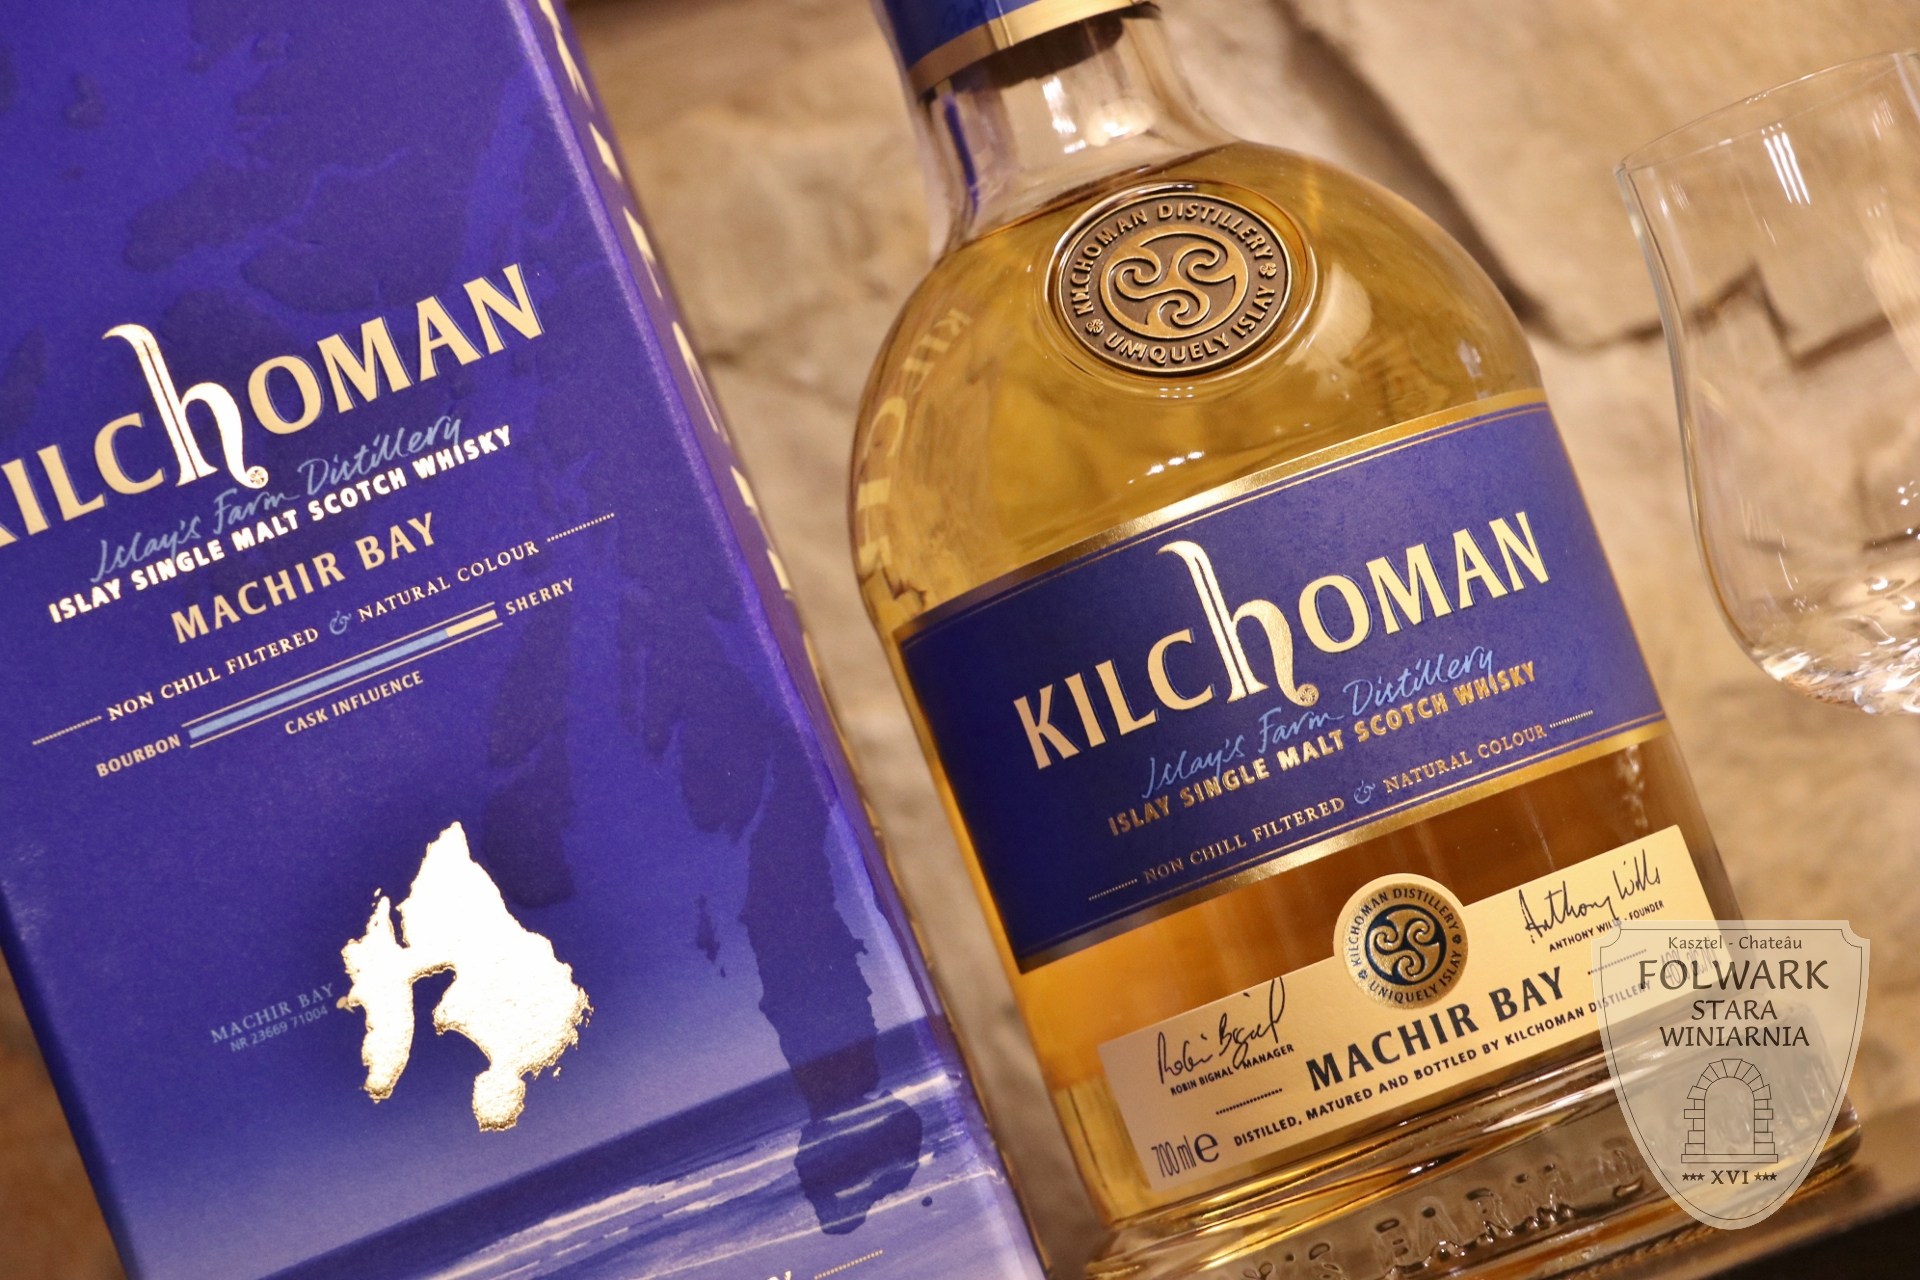 Kilchoman Machir Bay Islay Single Malt Scotch Whisky